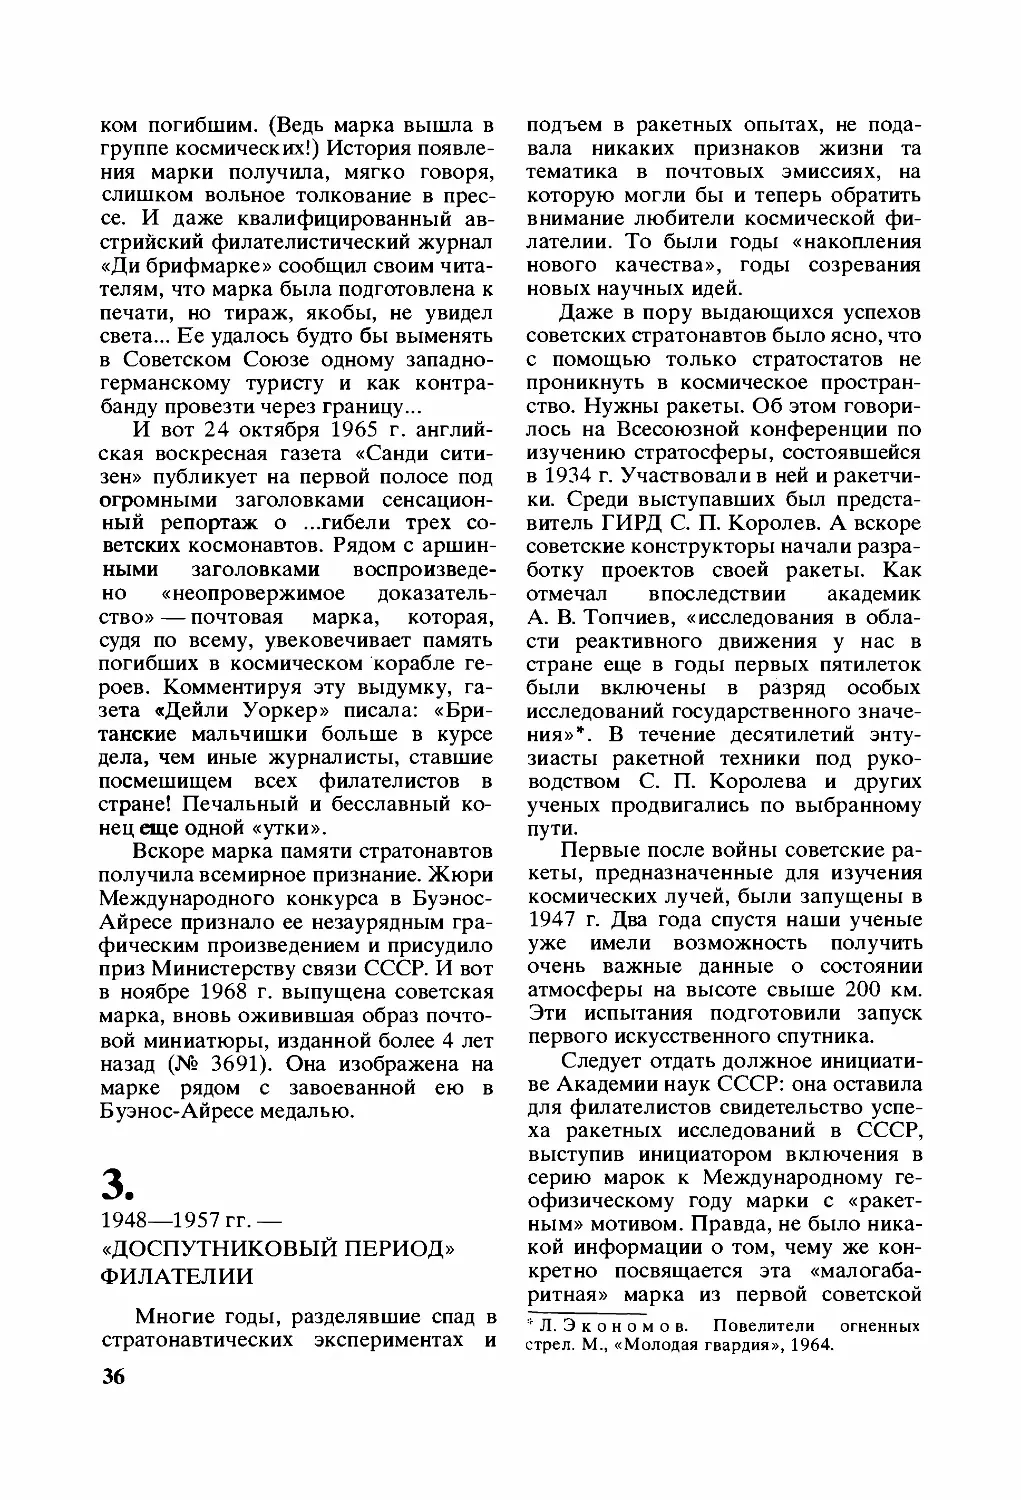 1948—1957 гг. — «доспутниковый период» филателии